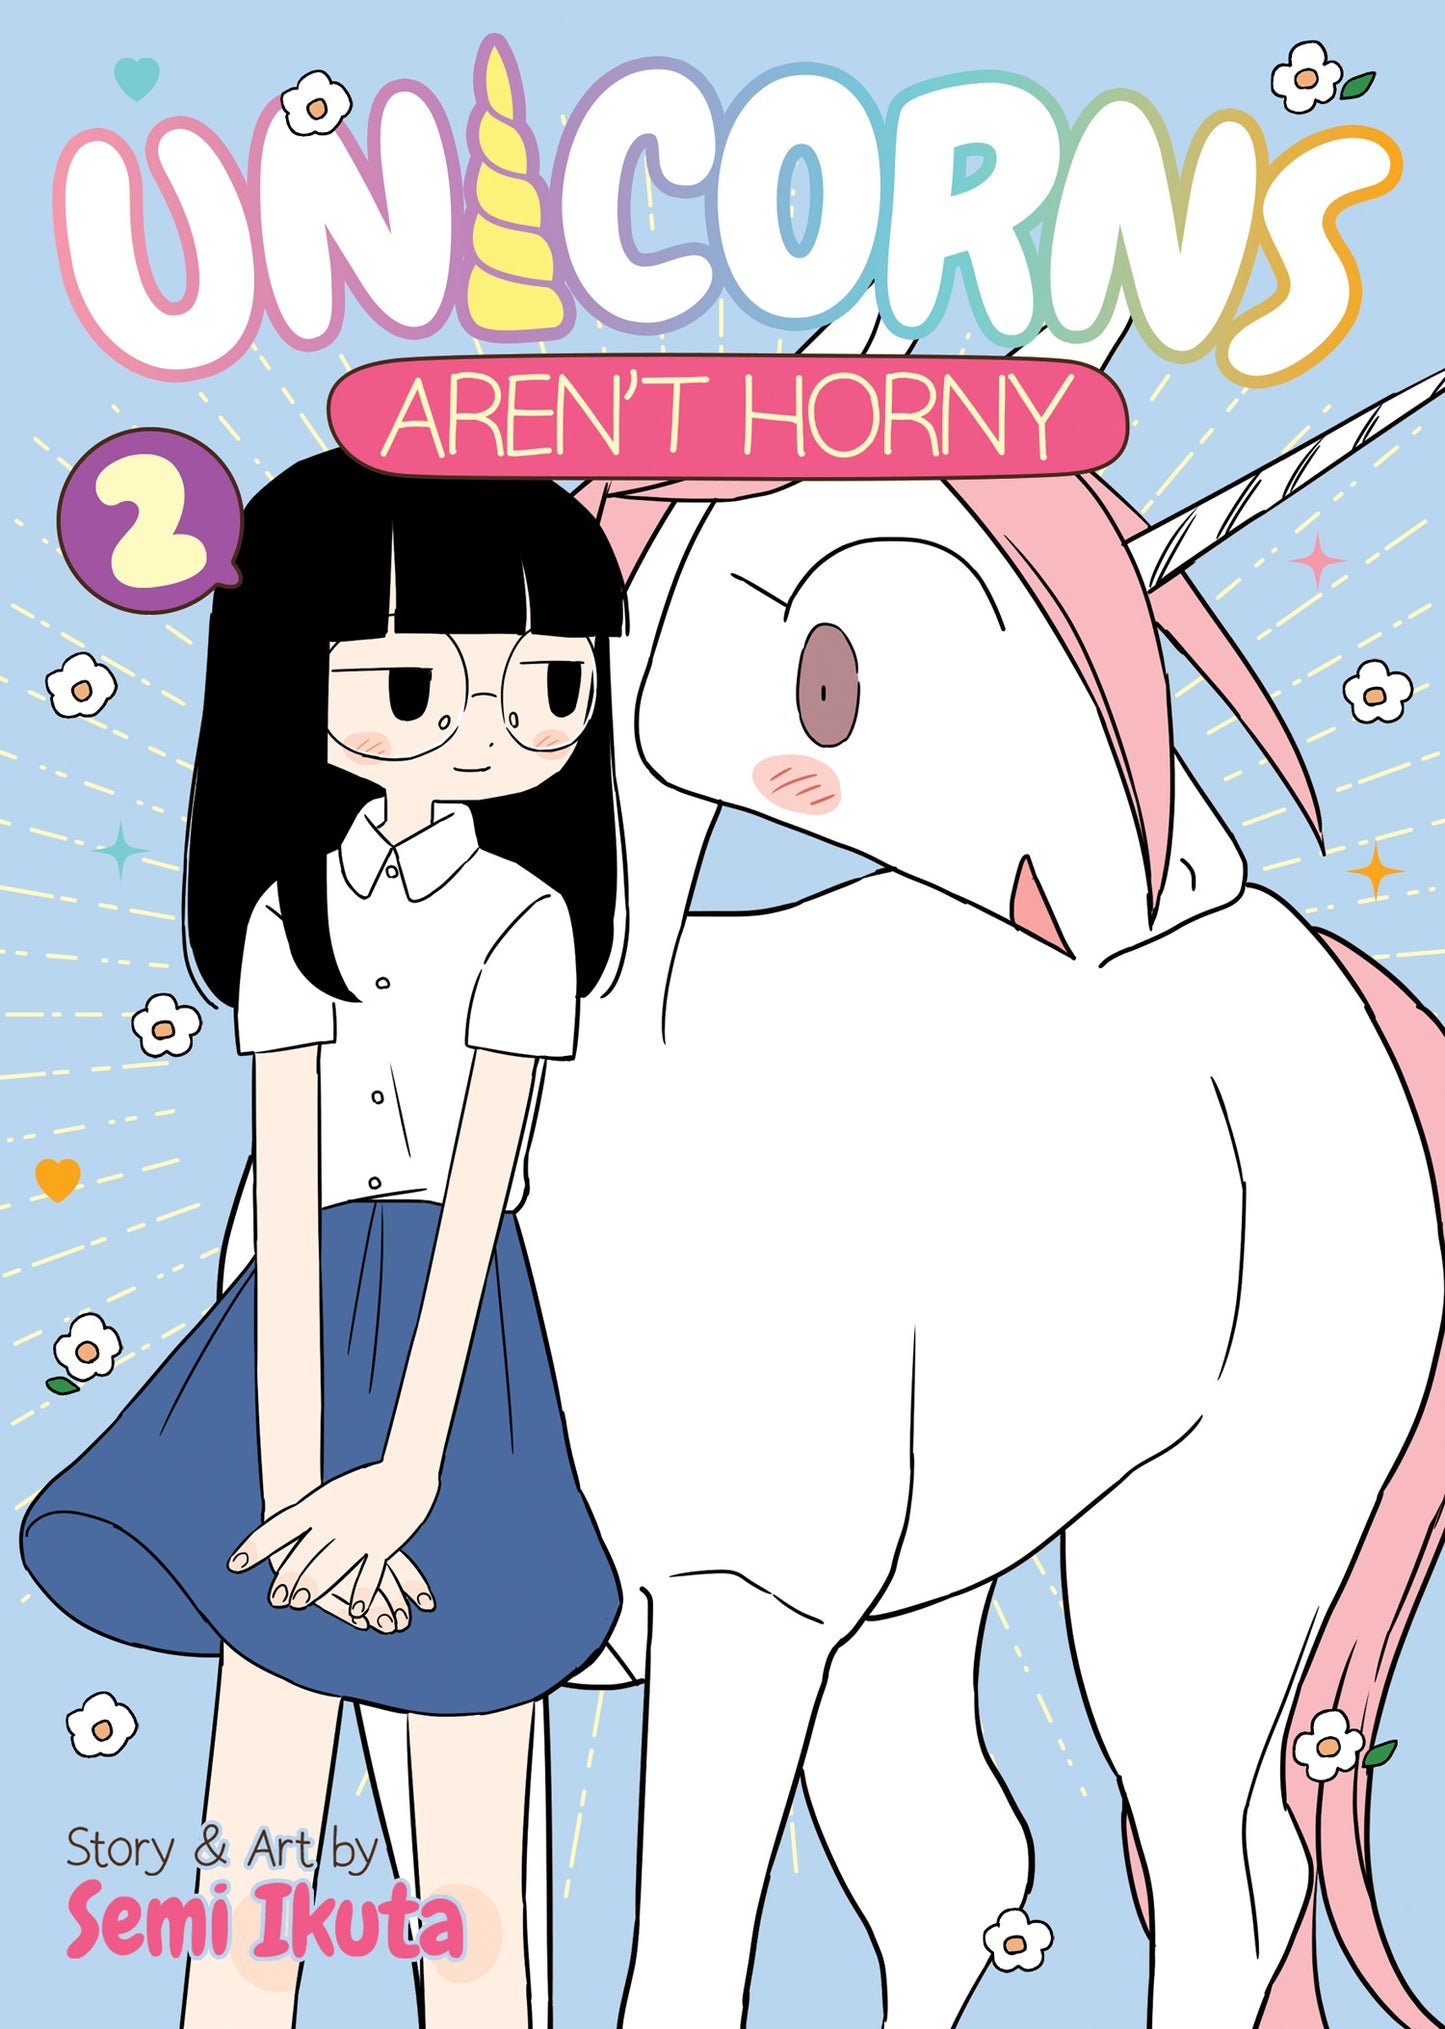 Unicorns Aren't Horny Vol. 2 - Manga Warehouse